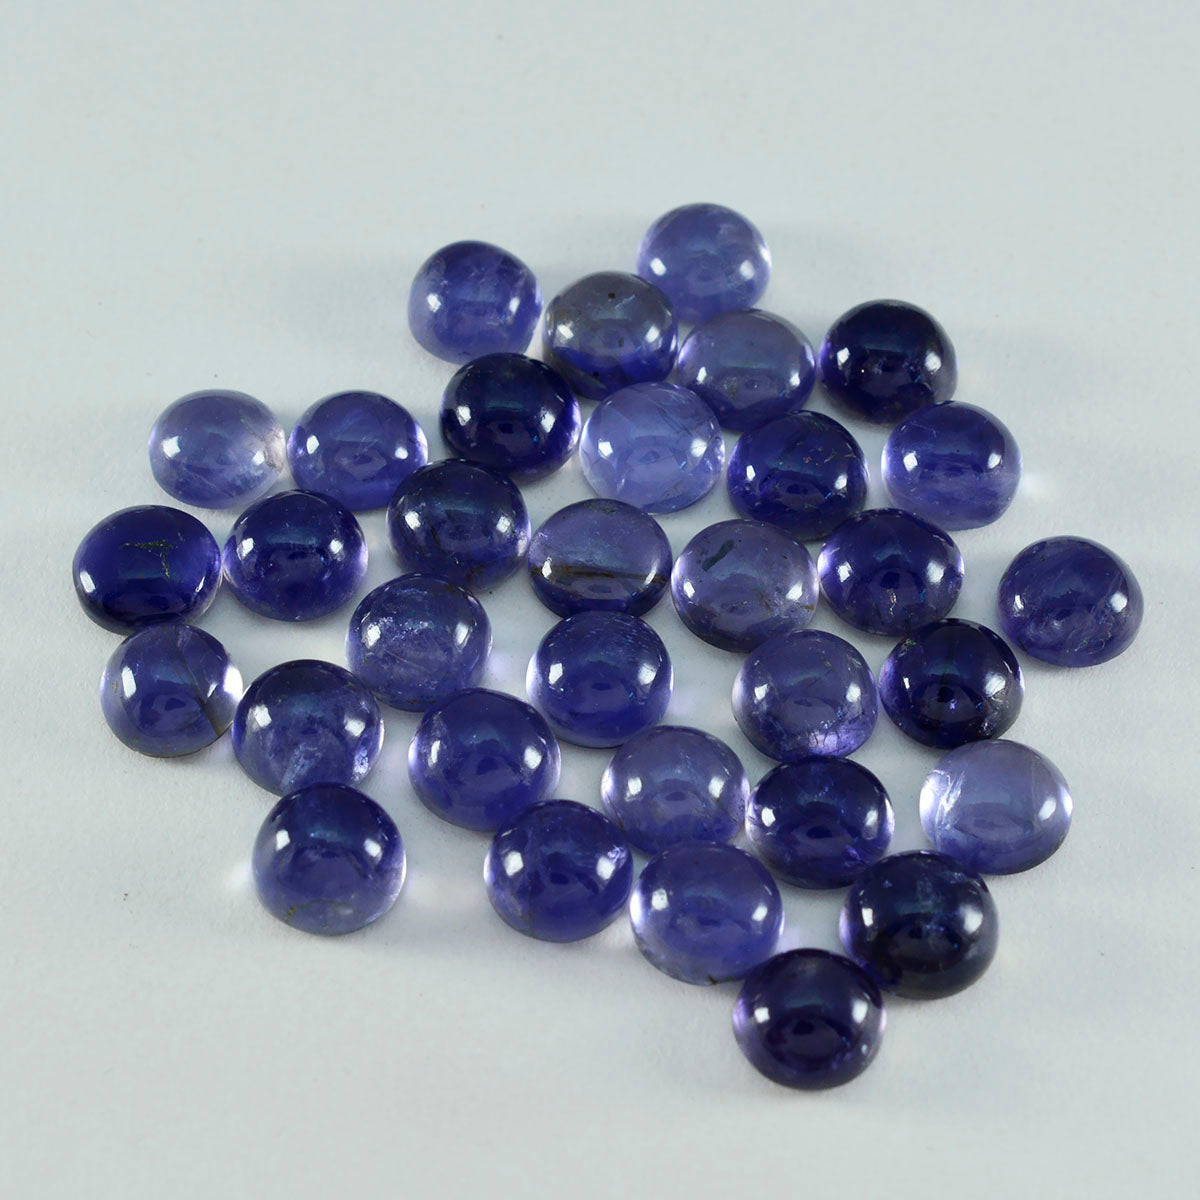 Riyogems 1 Stück blauer Iolith-Cabochon, 8 x 8 mm, runde Form, A+1-Qualität, lose Edelsteine